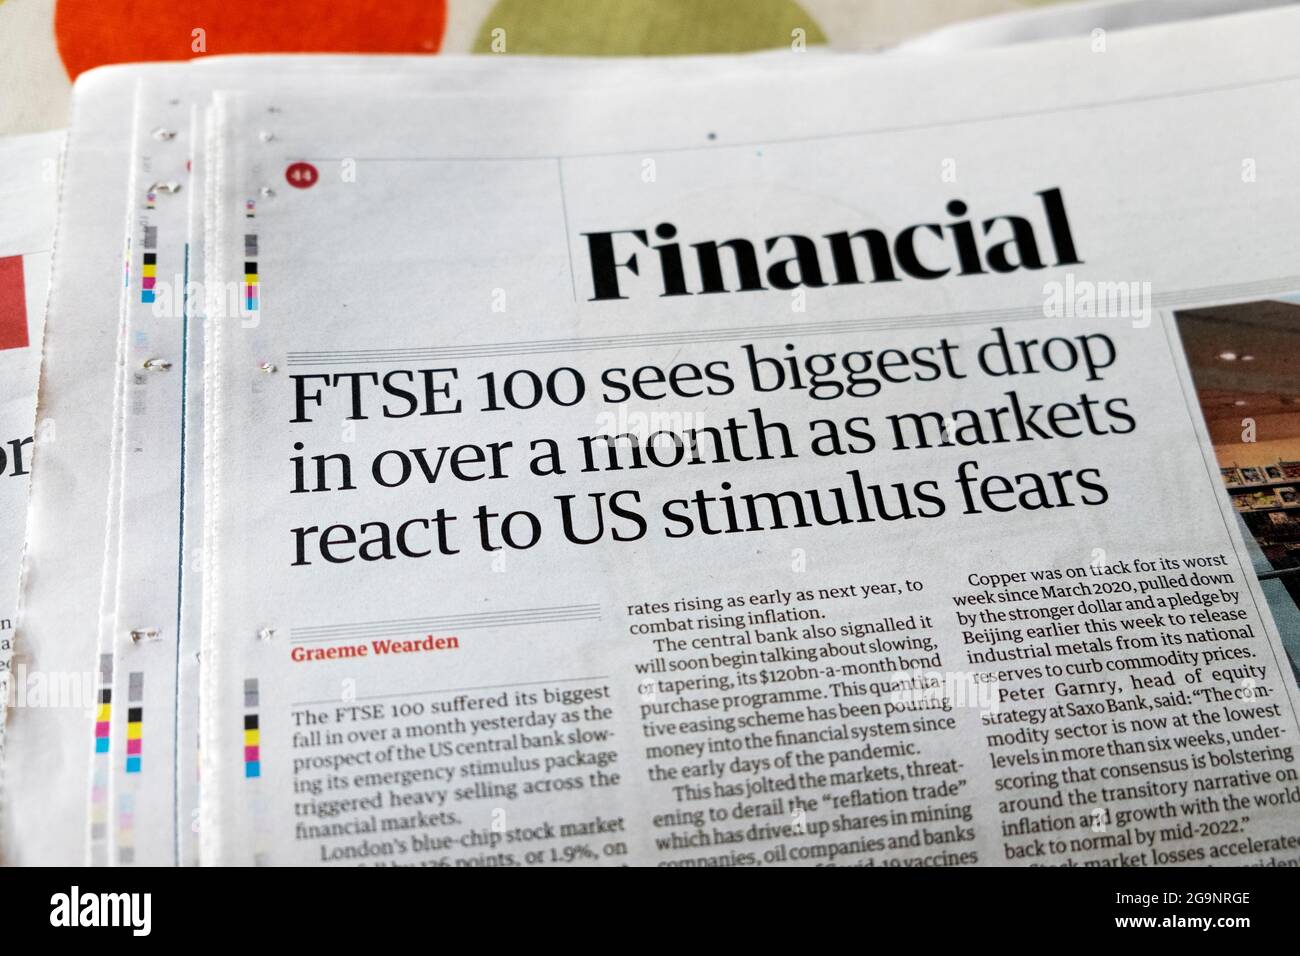 Sezione finanziaria giornale Guardian titolo "FTSE 100 vede il calo più grande in oltre un mese, come i mercati reagiscono alle paure degli stimoli statunitensi" 18 giugno 2021 Londra Foto Stock